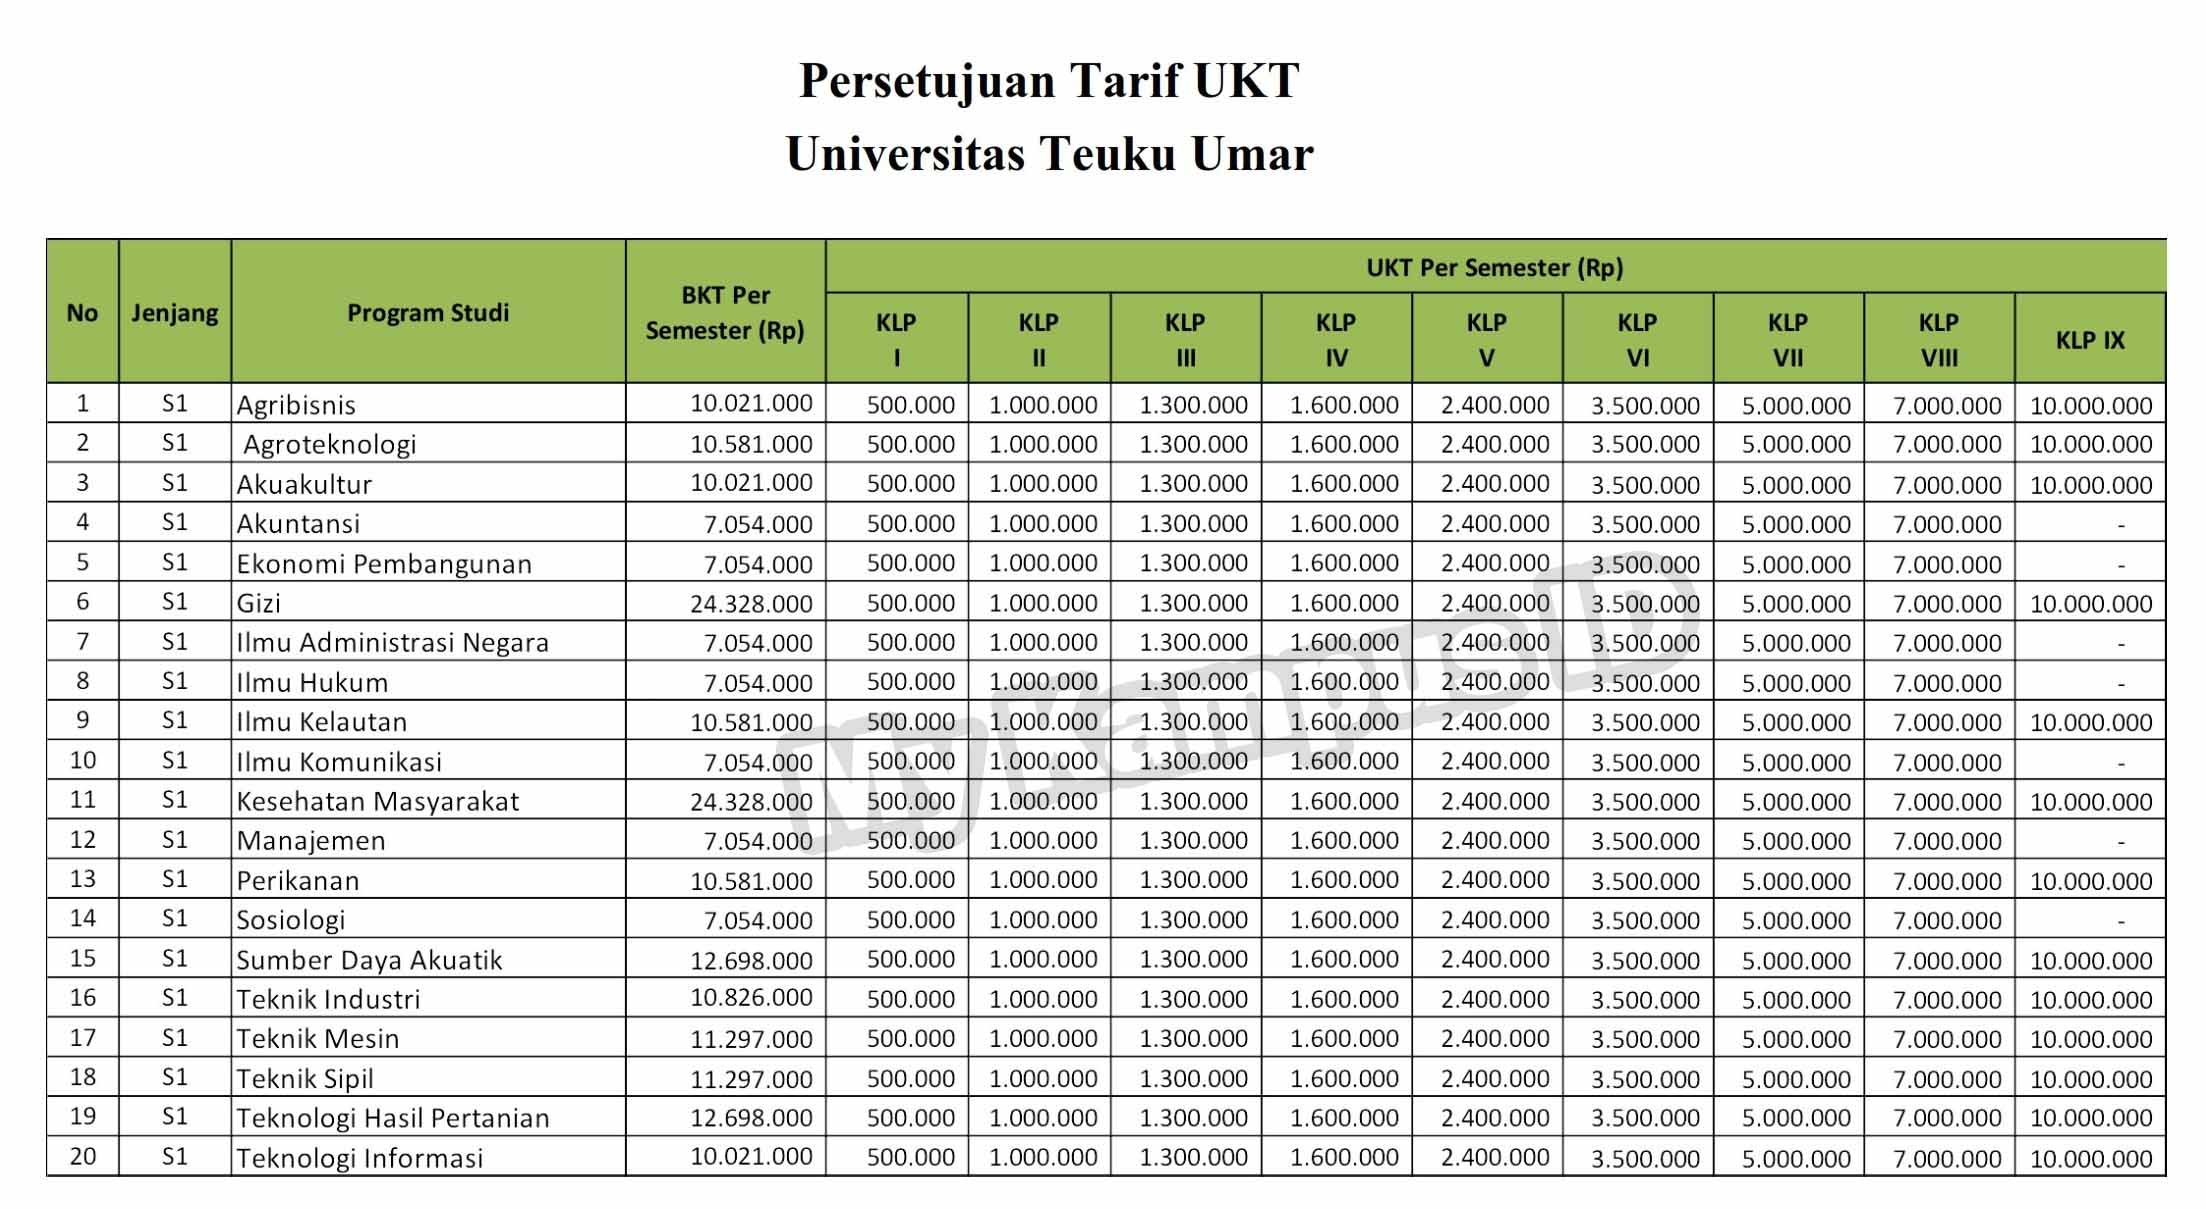 tabel biaya kuliah UTU - mykampus.id